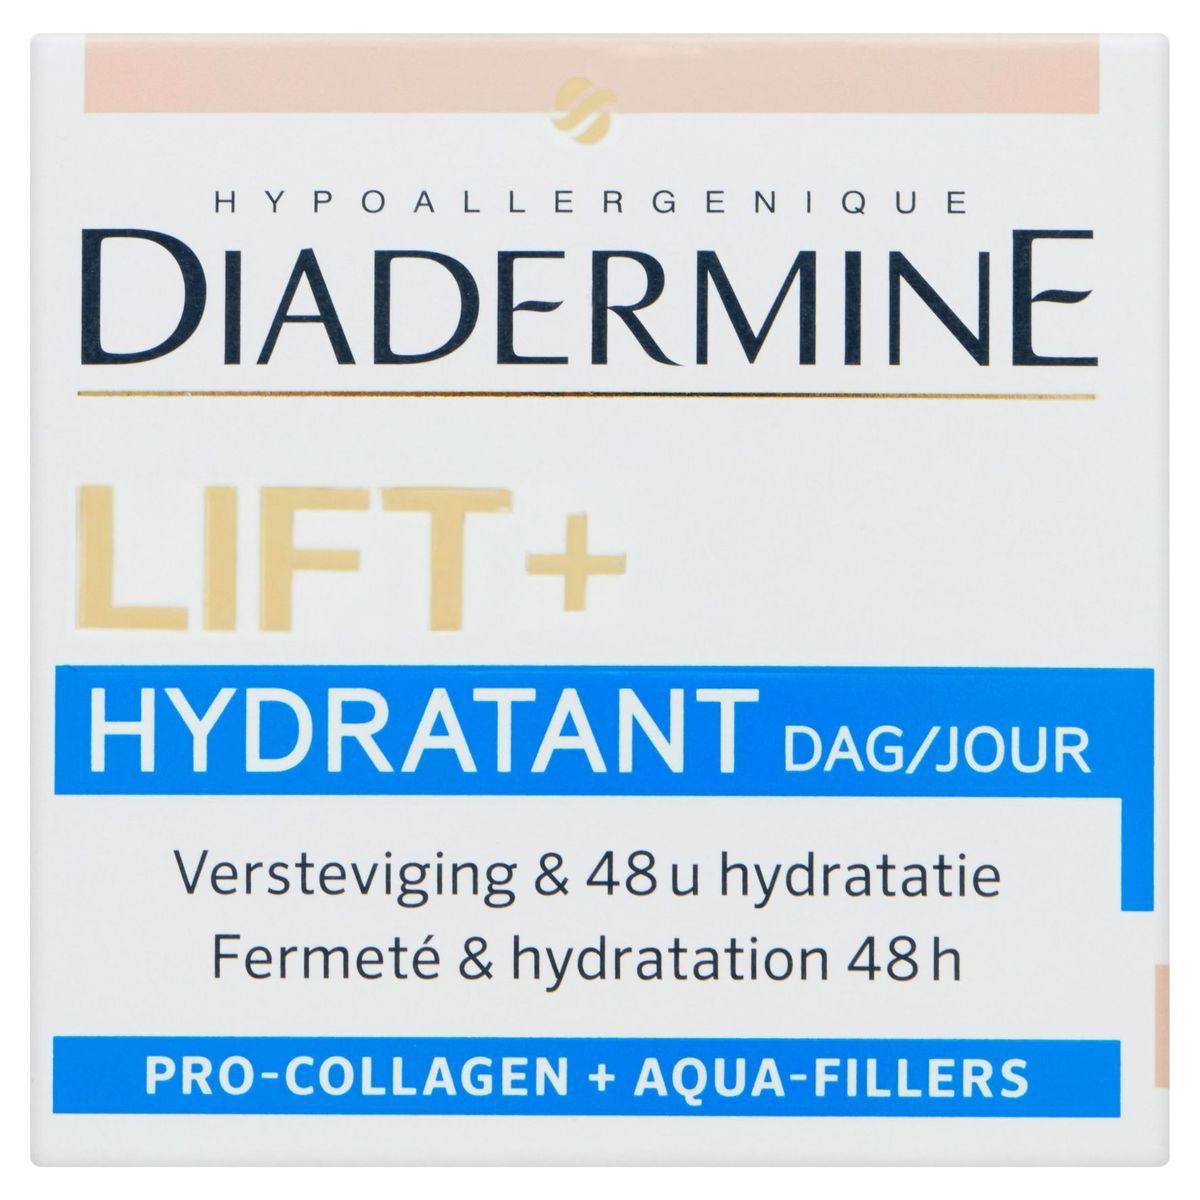 Diadermine Lift+ Hydratant Anti-Age Dag 50 ml